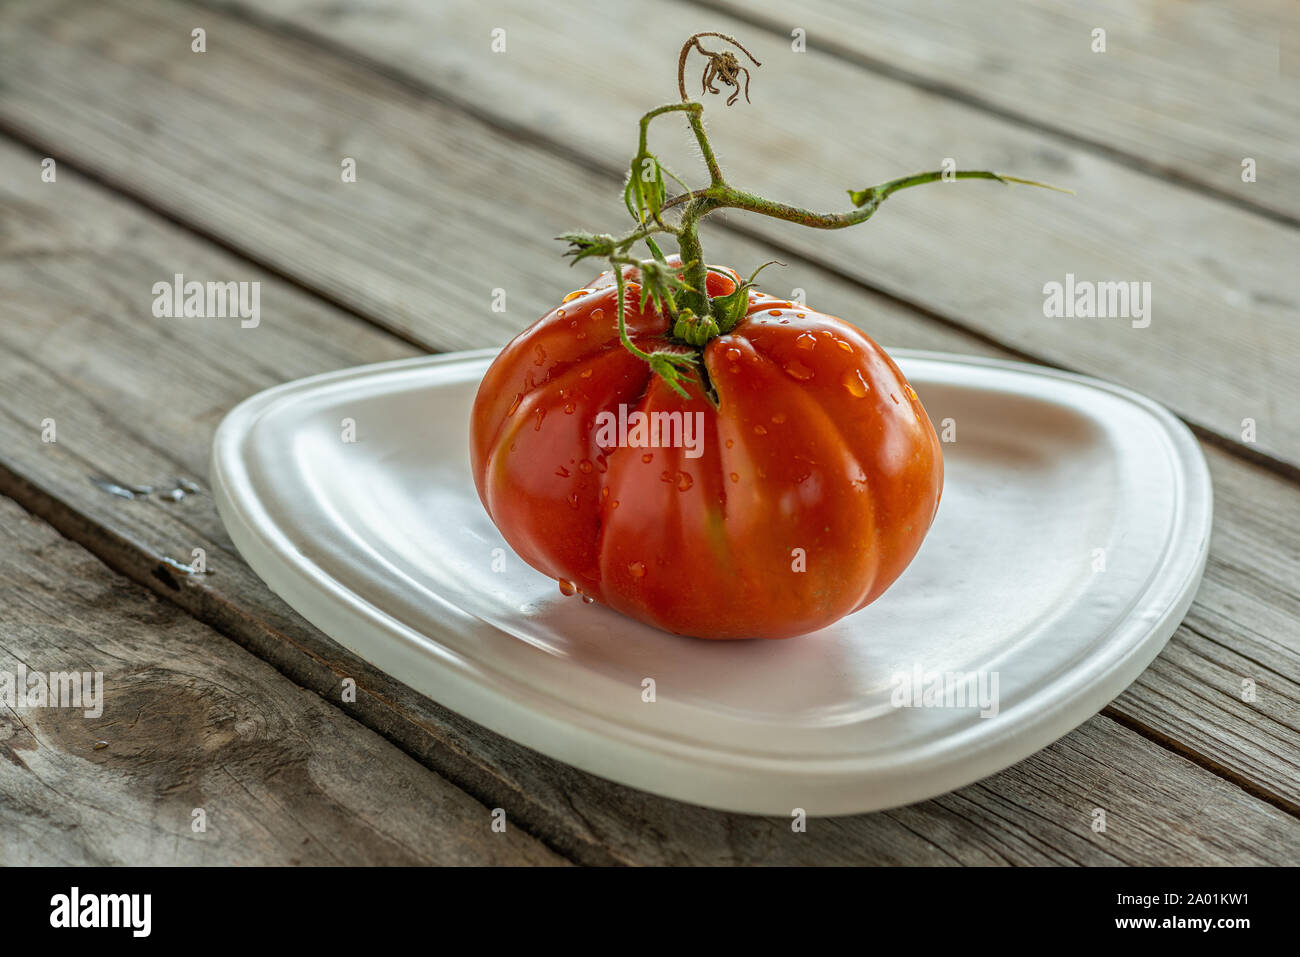 Cuore bovino pomodori sul tavolo Foto Stock